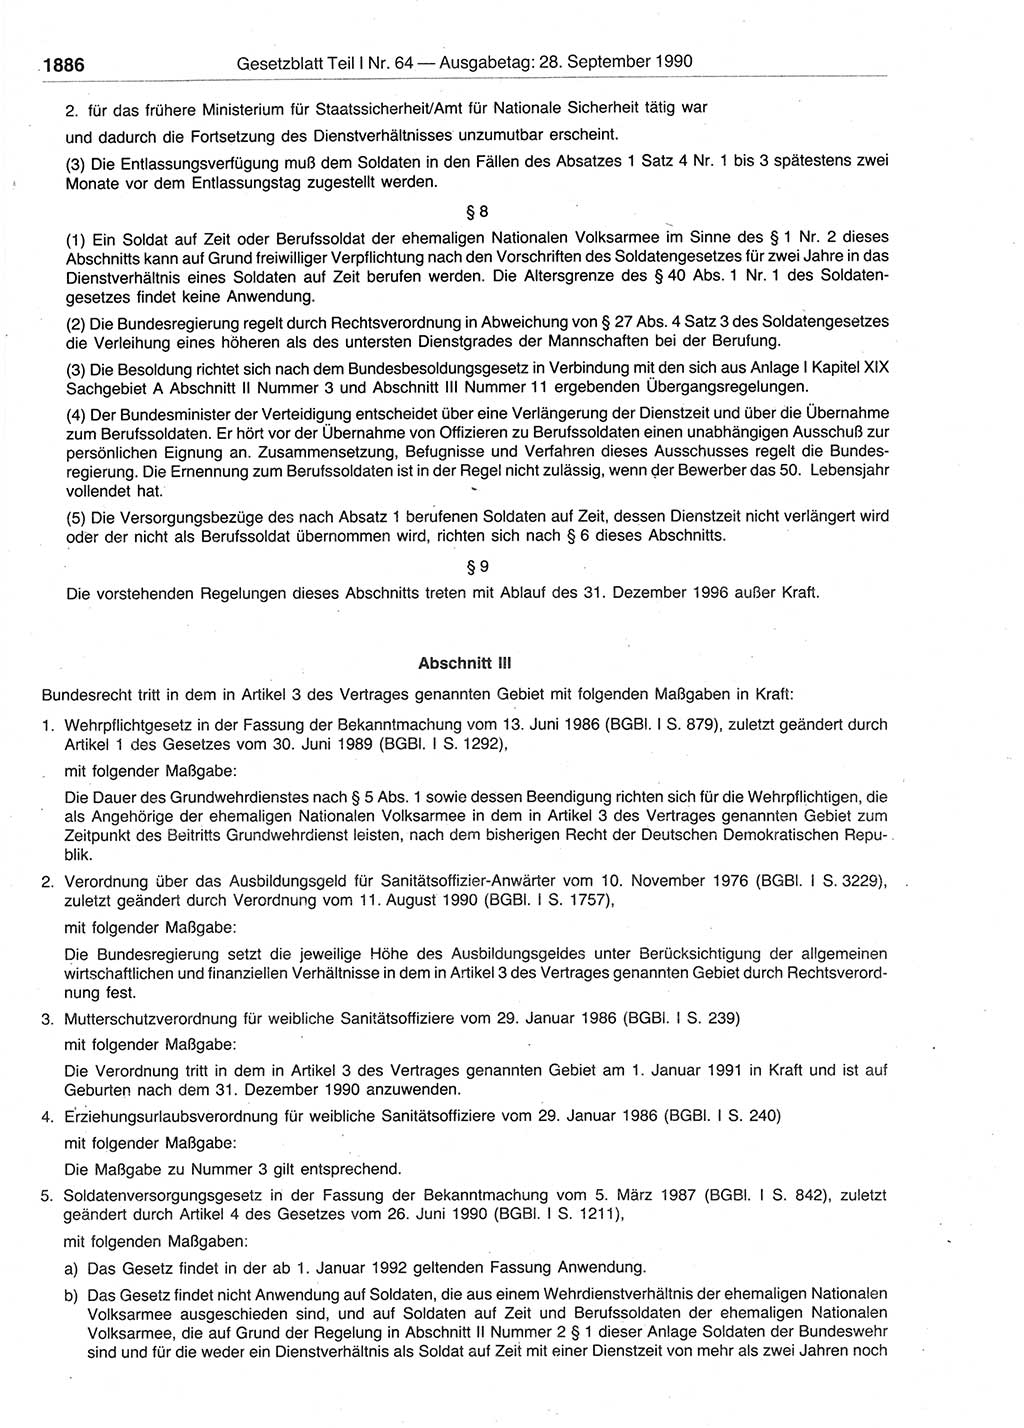 Gesetzblatt (GBl.) der Deutschen Demokratischen Republik (DDR) Teil Ⅰ 1990, Seite 1886 (GBl. DDR Ⅰ 1990, S. 1886)